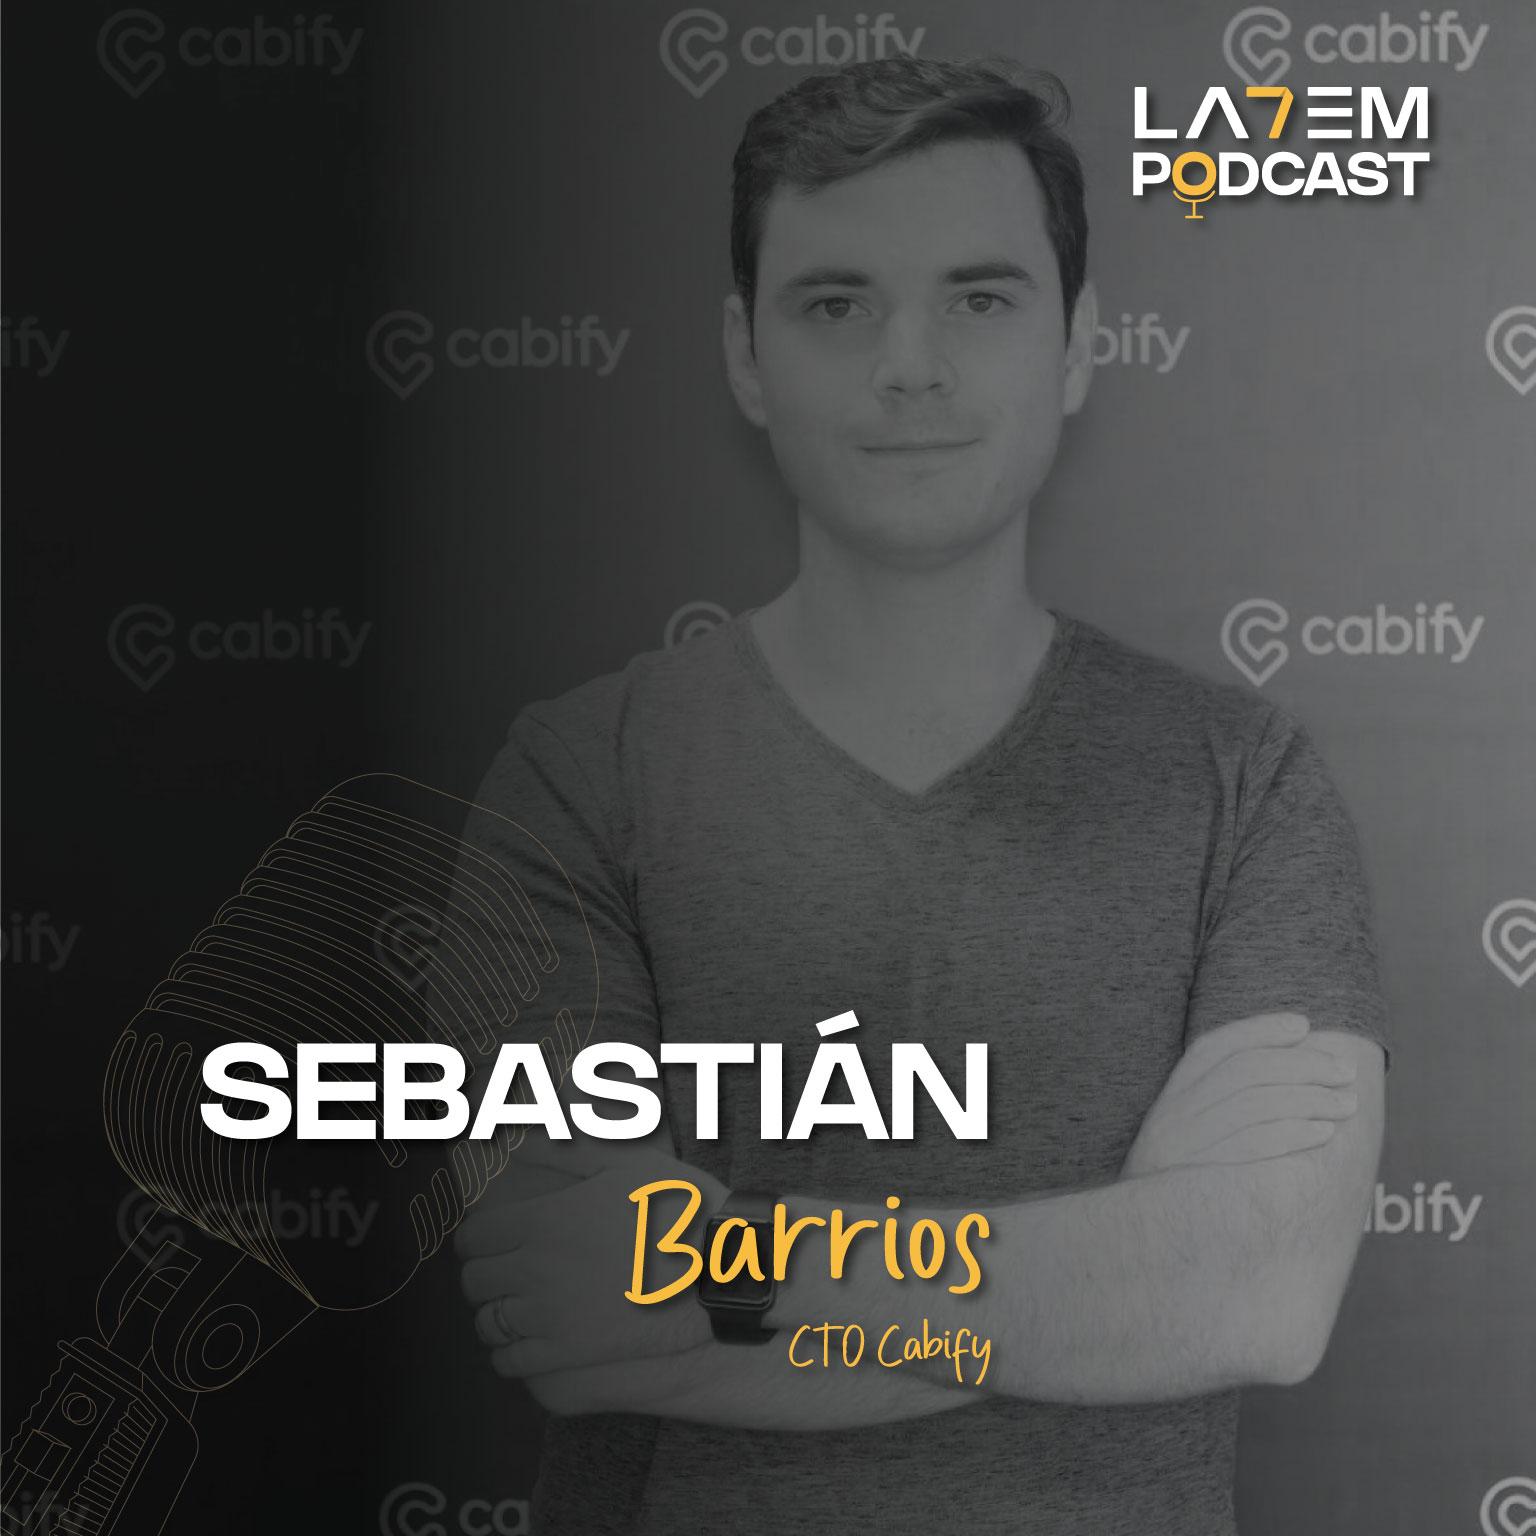 Sebastián Barrios: El emprendedor que le vendió su startup a Cabify